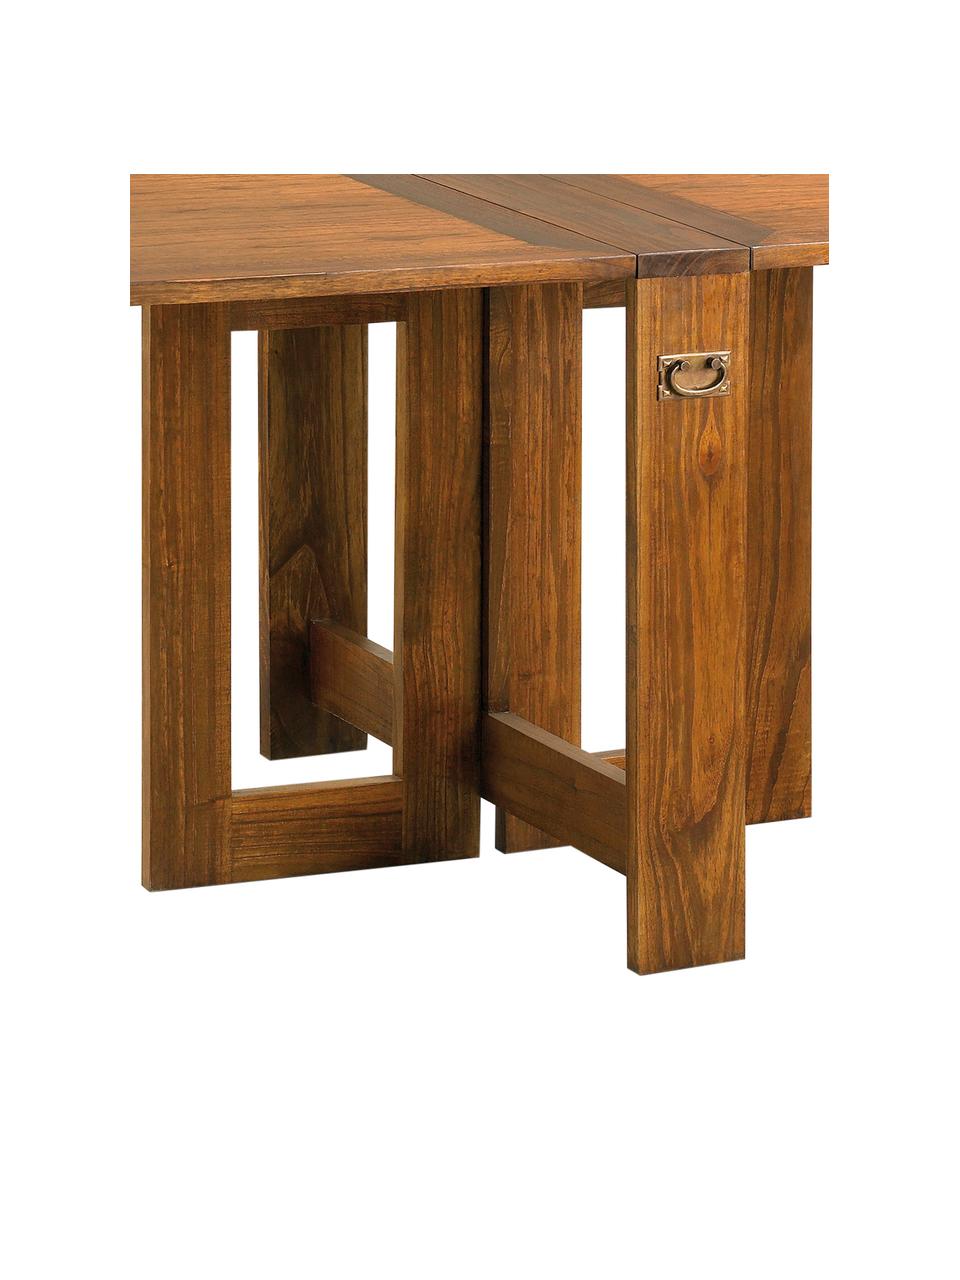 Ręcznie wykonany stół z drewna mindi Star, rozkładany, Blat: drewno mindi, Korpus: drewno mindi, Brązowy, S 165 x G 90 cm